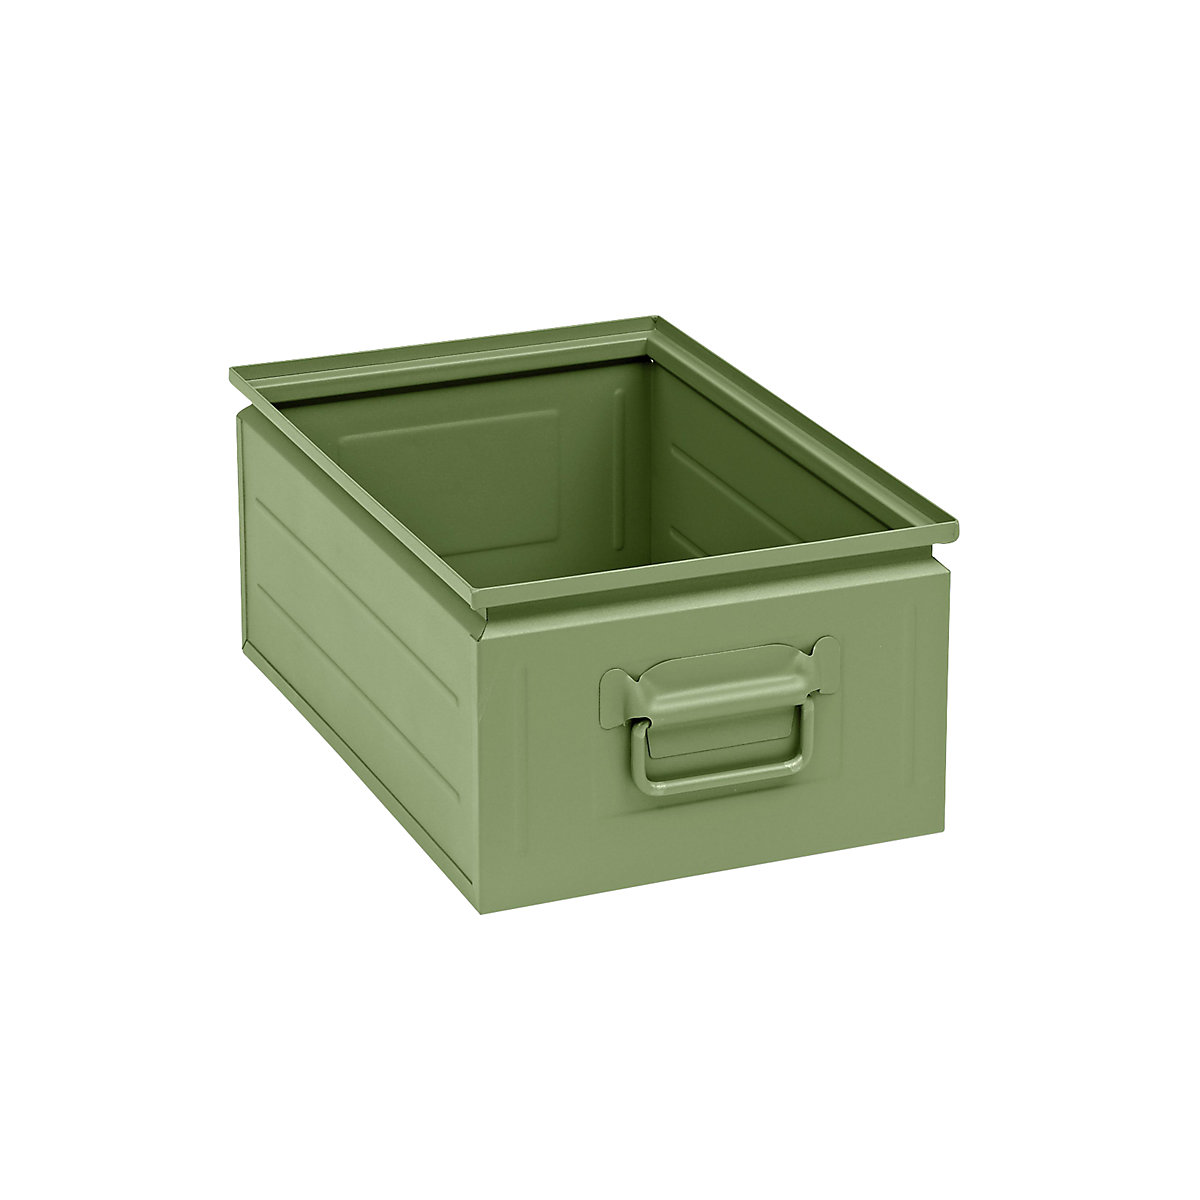 Kutija za slaganje od čeličnog lima, volumen otprilike 25 l, u rezeda zelenoj boji RAL 6011